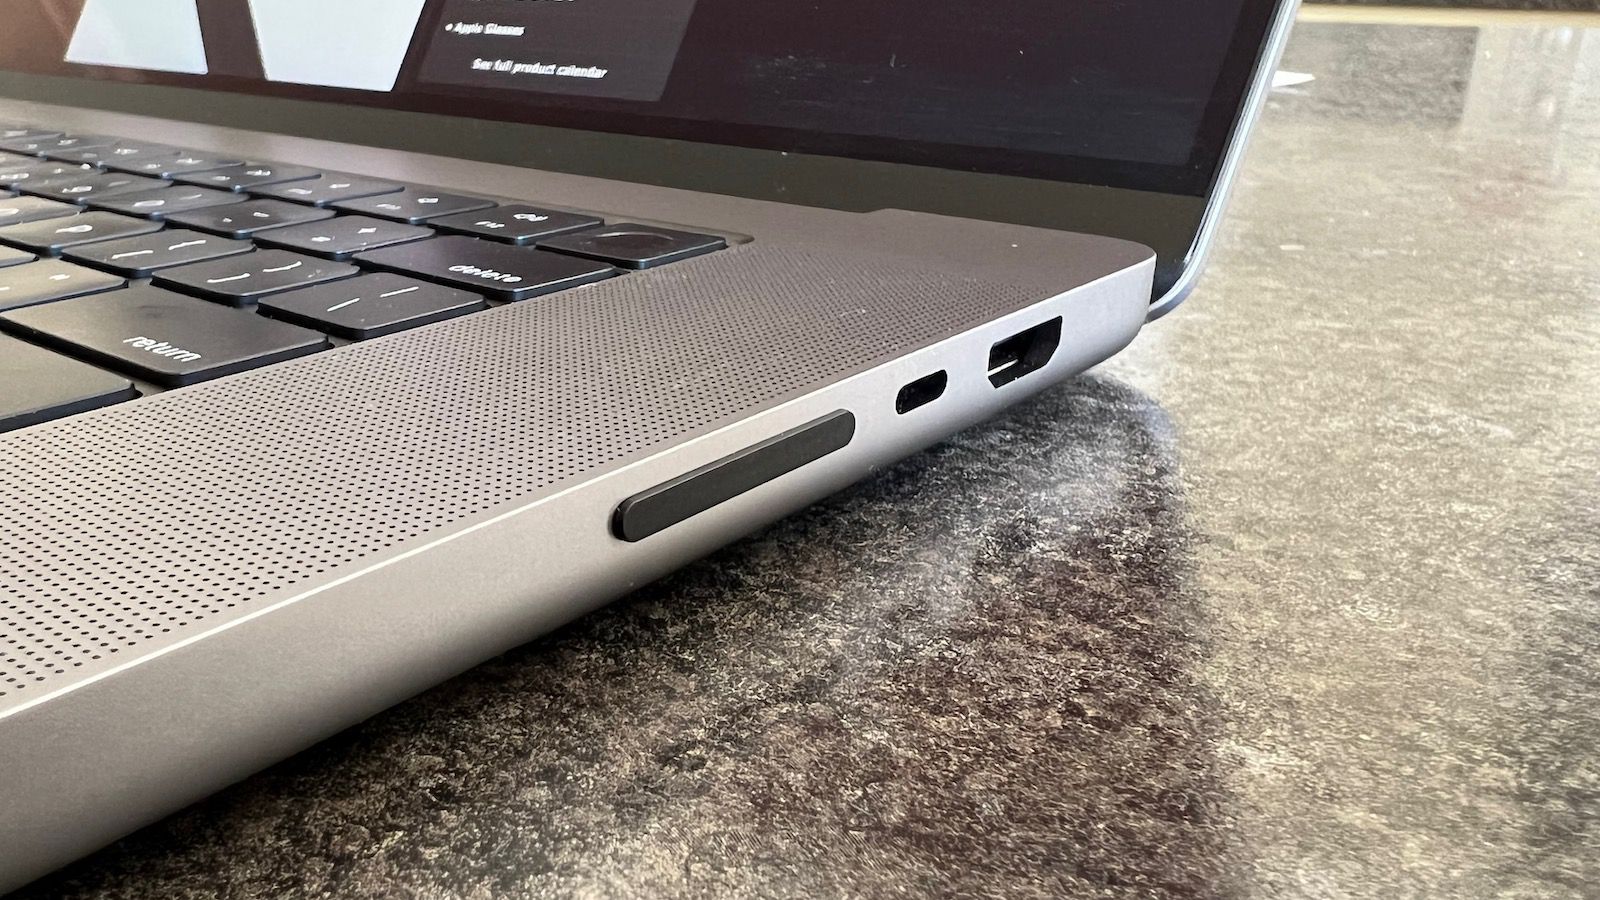 Le JetDrive Lite, carte SD discrète pour MacBook Pro de Transcend, passe à  1 To